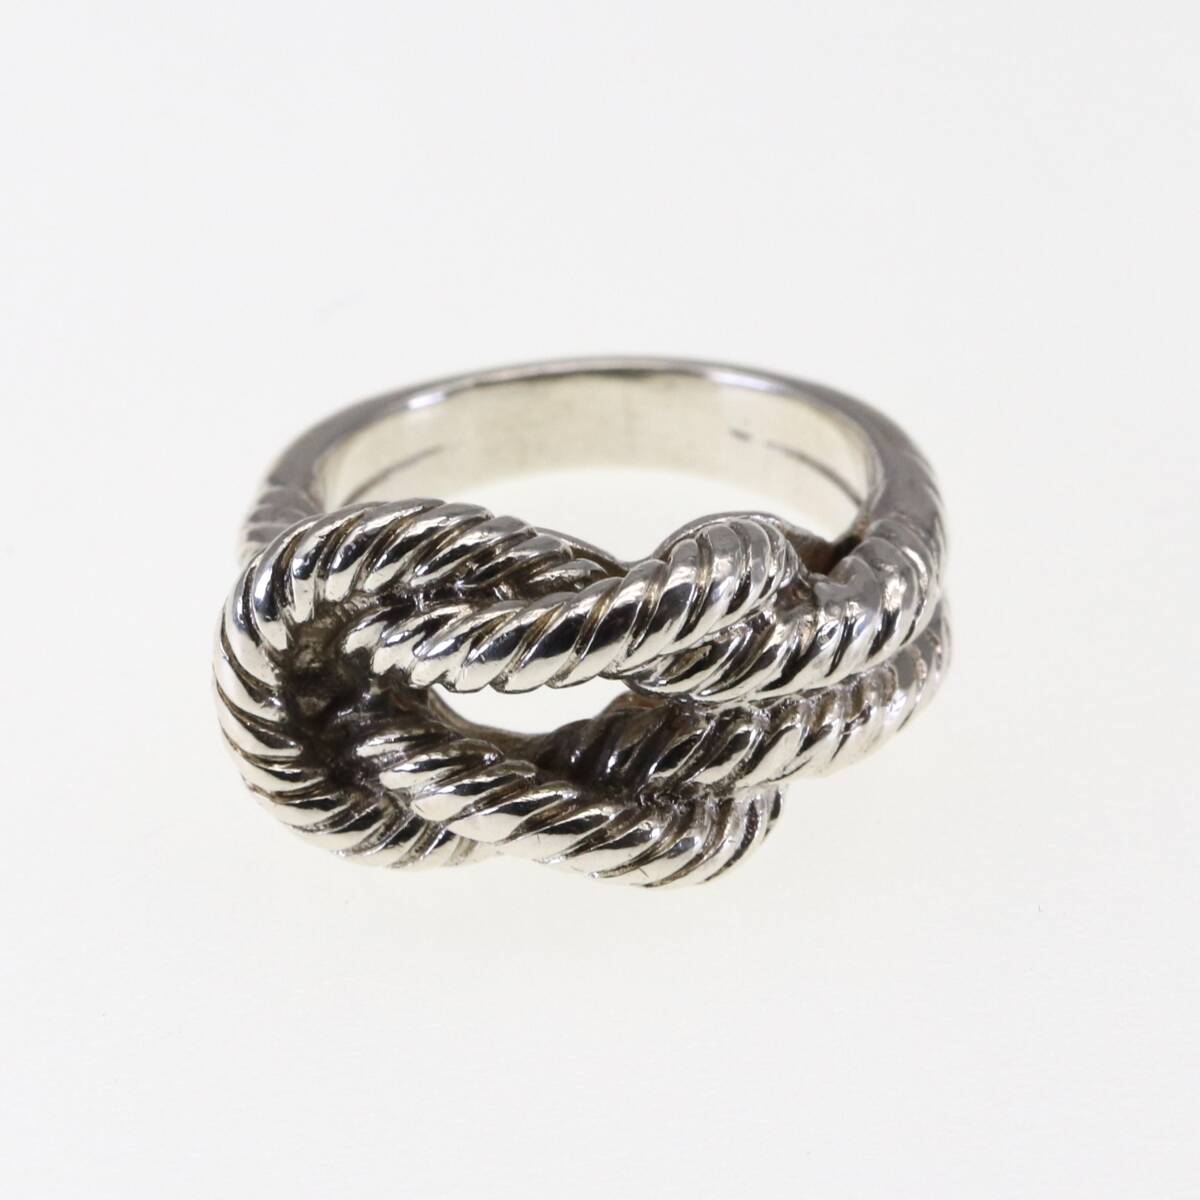  редкий Vintage Hermes кольцо серебряный 925 кручение трос узел HERMESo-tienn